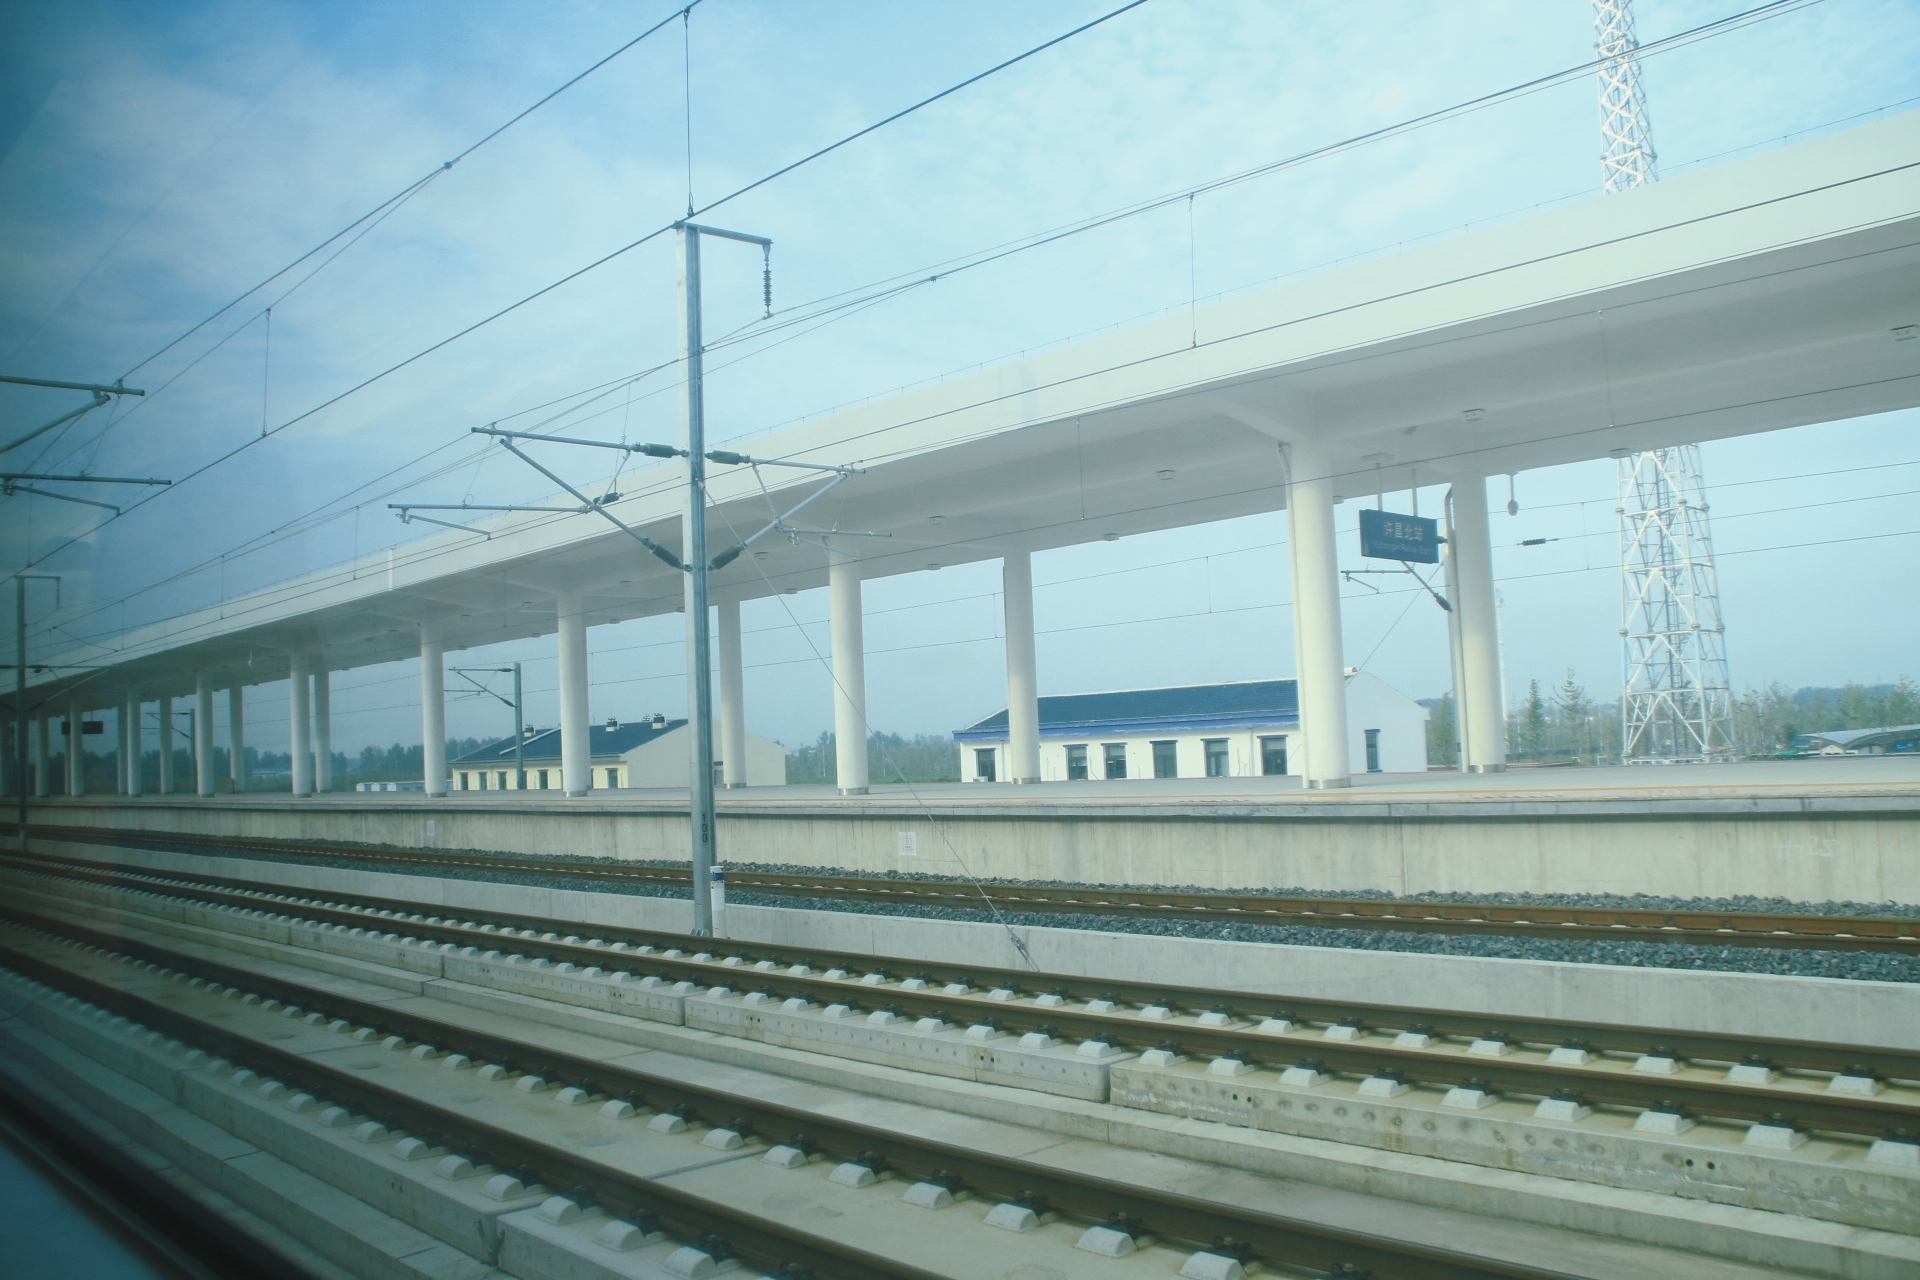 津静市域（郊）铁路首开段预计2024年通车试运营